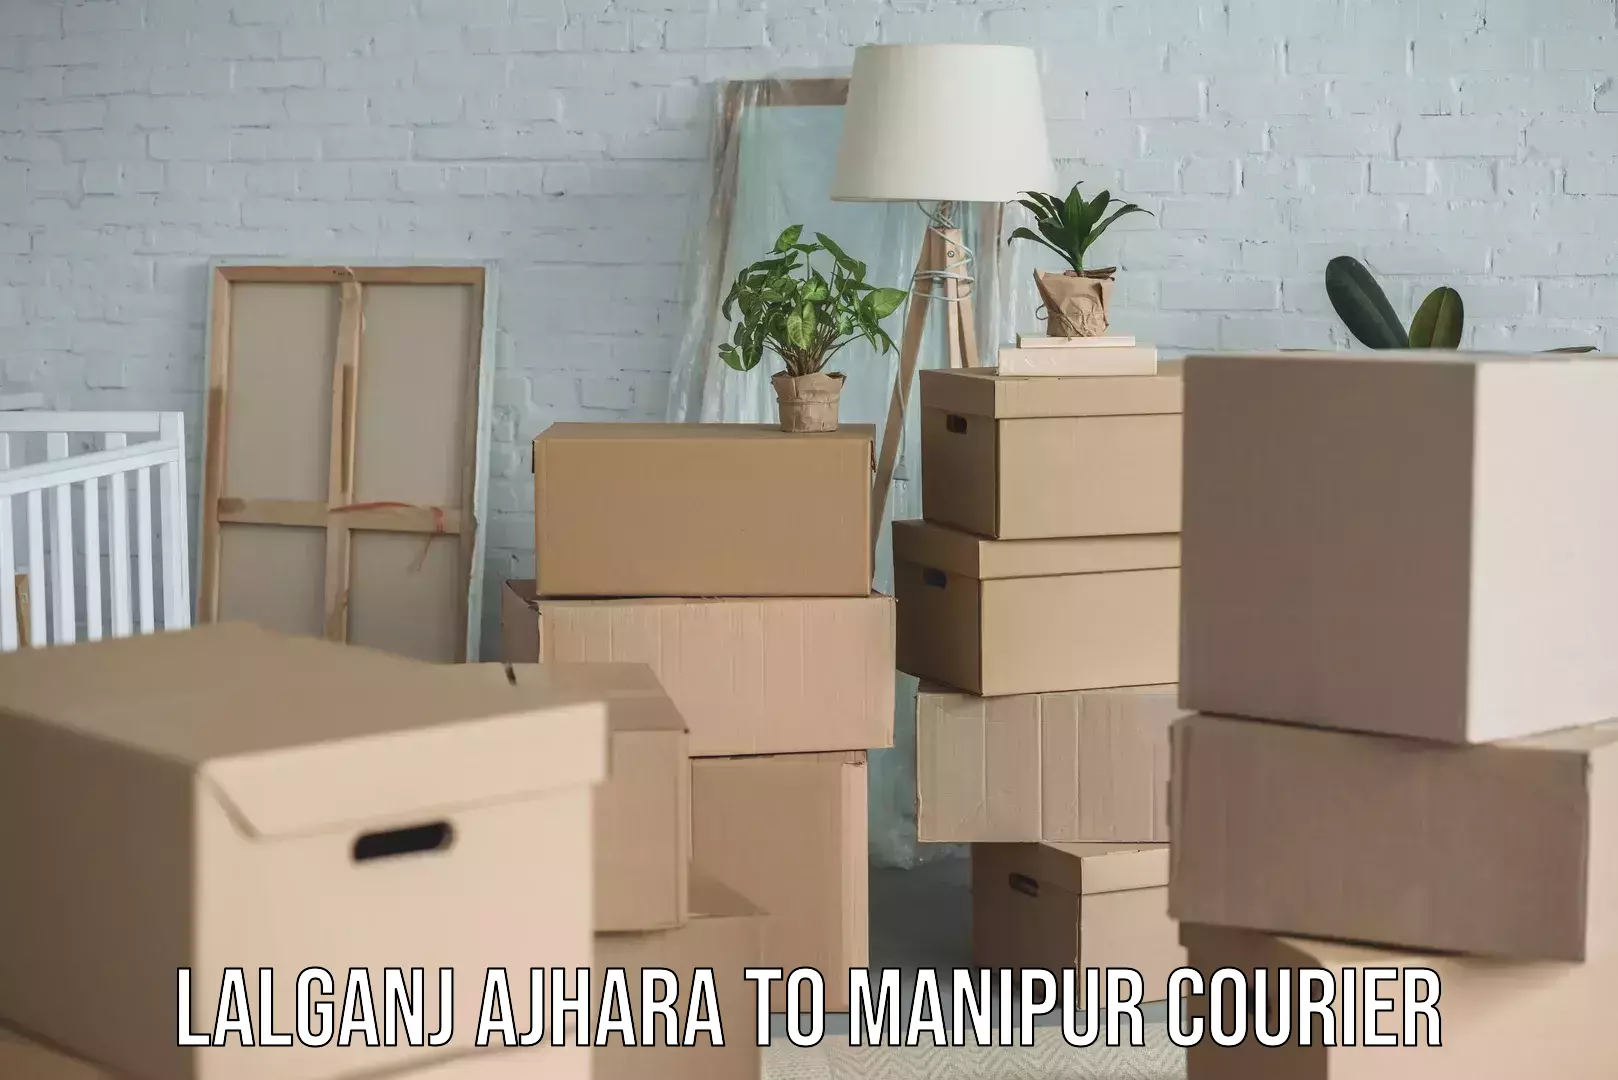 Furniture moving experts Lalganj Ajhara to Manipur